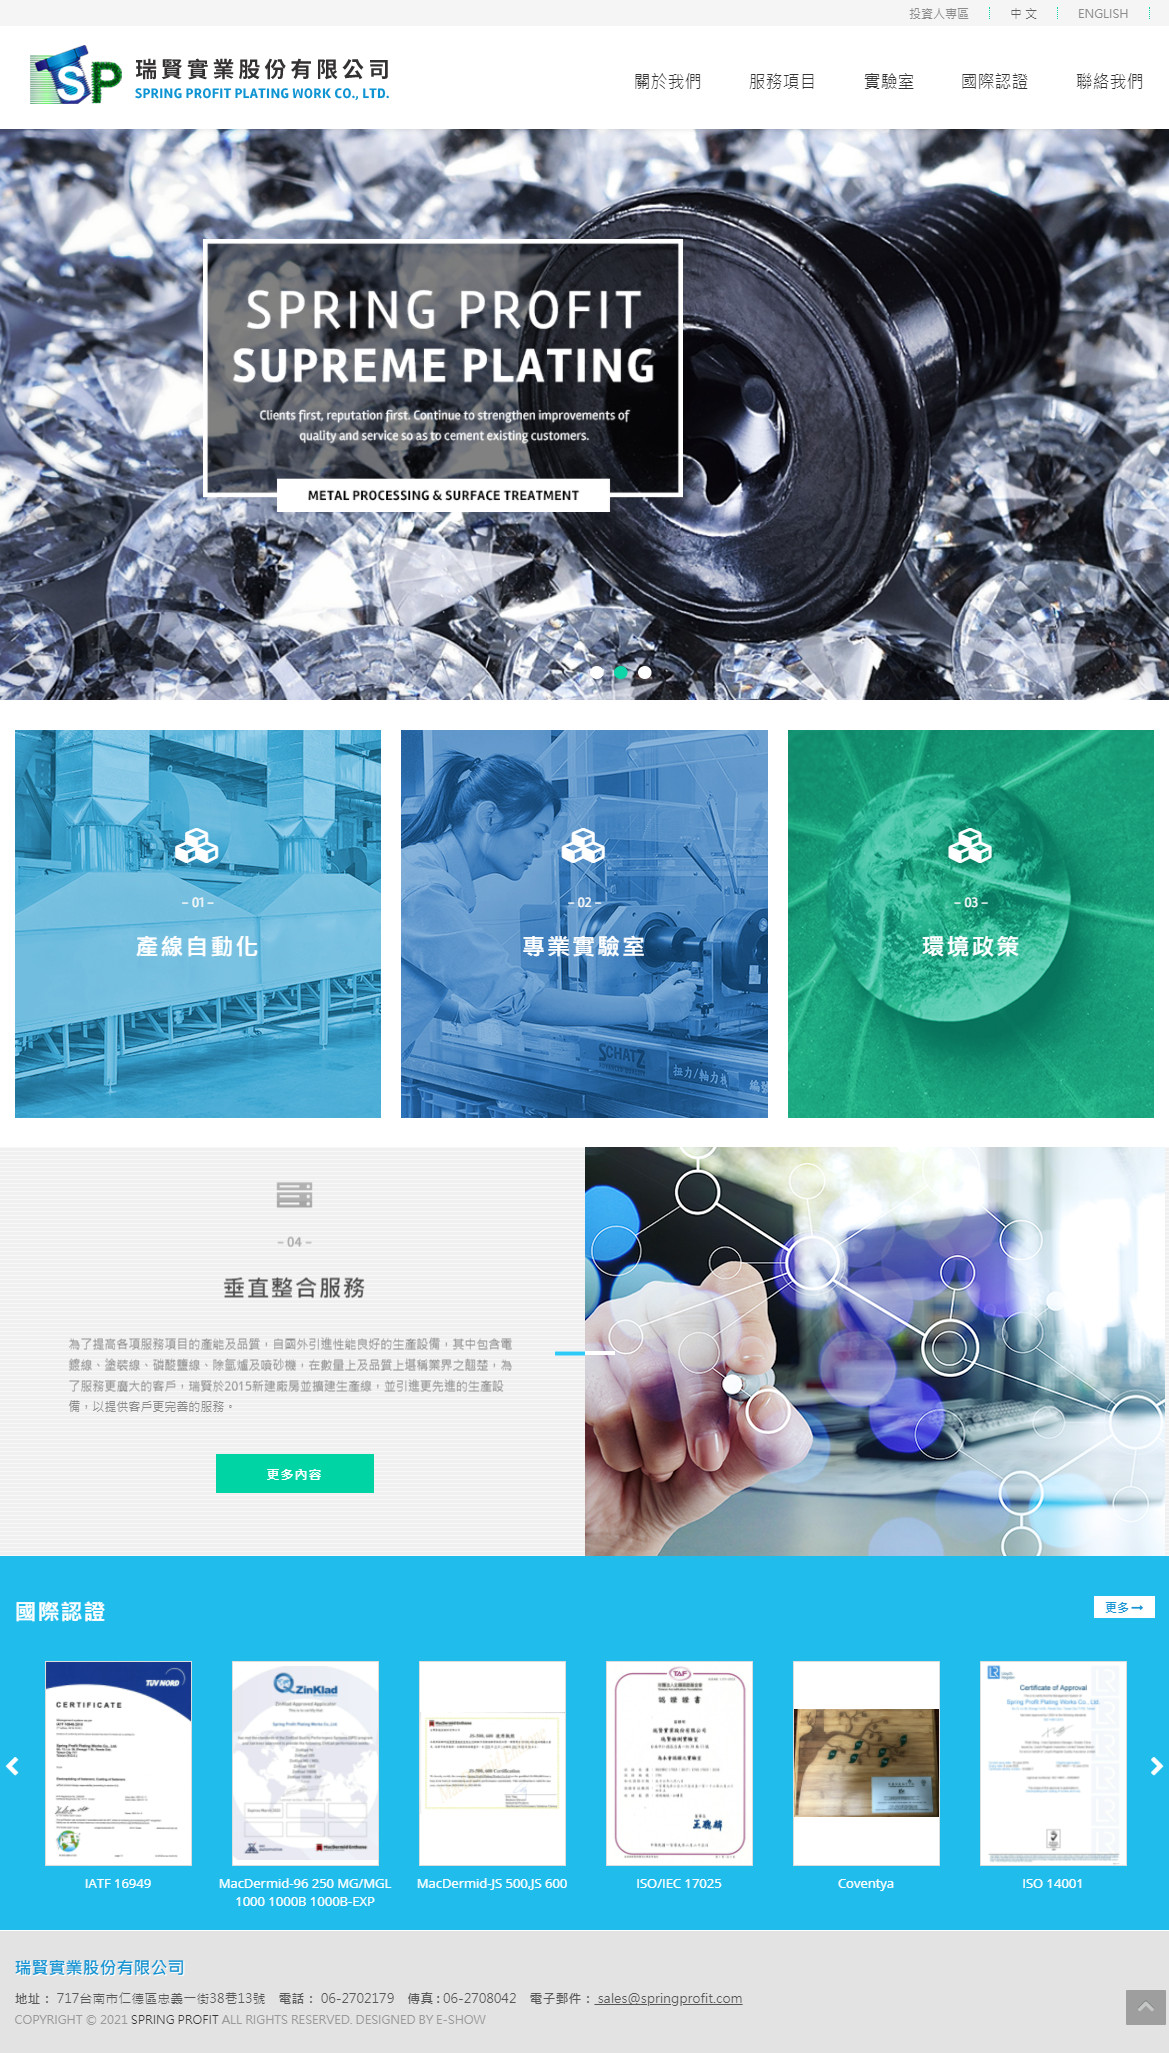 瑞賢實業股份有限公司 響應式RWD網站設計
網站設計